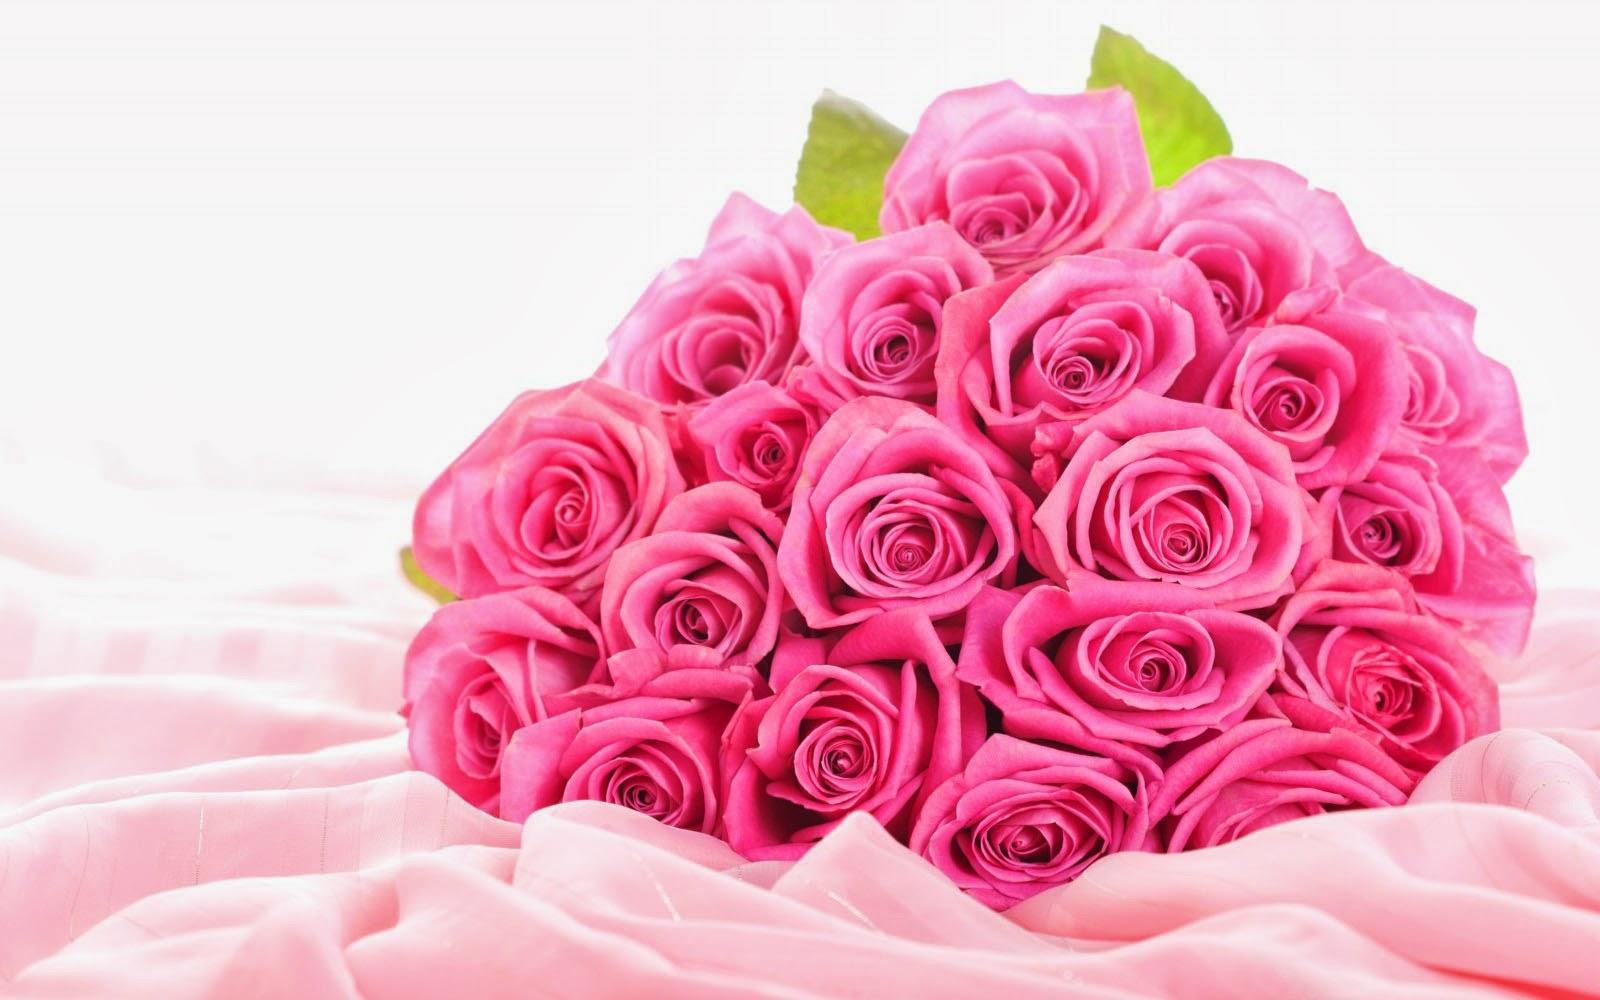 Clovisso Wallpaper Gallery: Pink Rose Bouquet Wallpaper